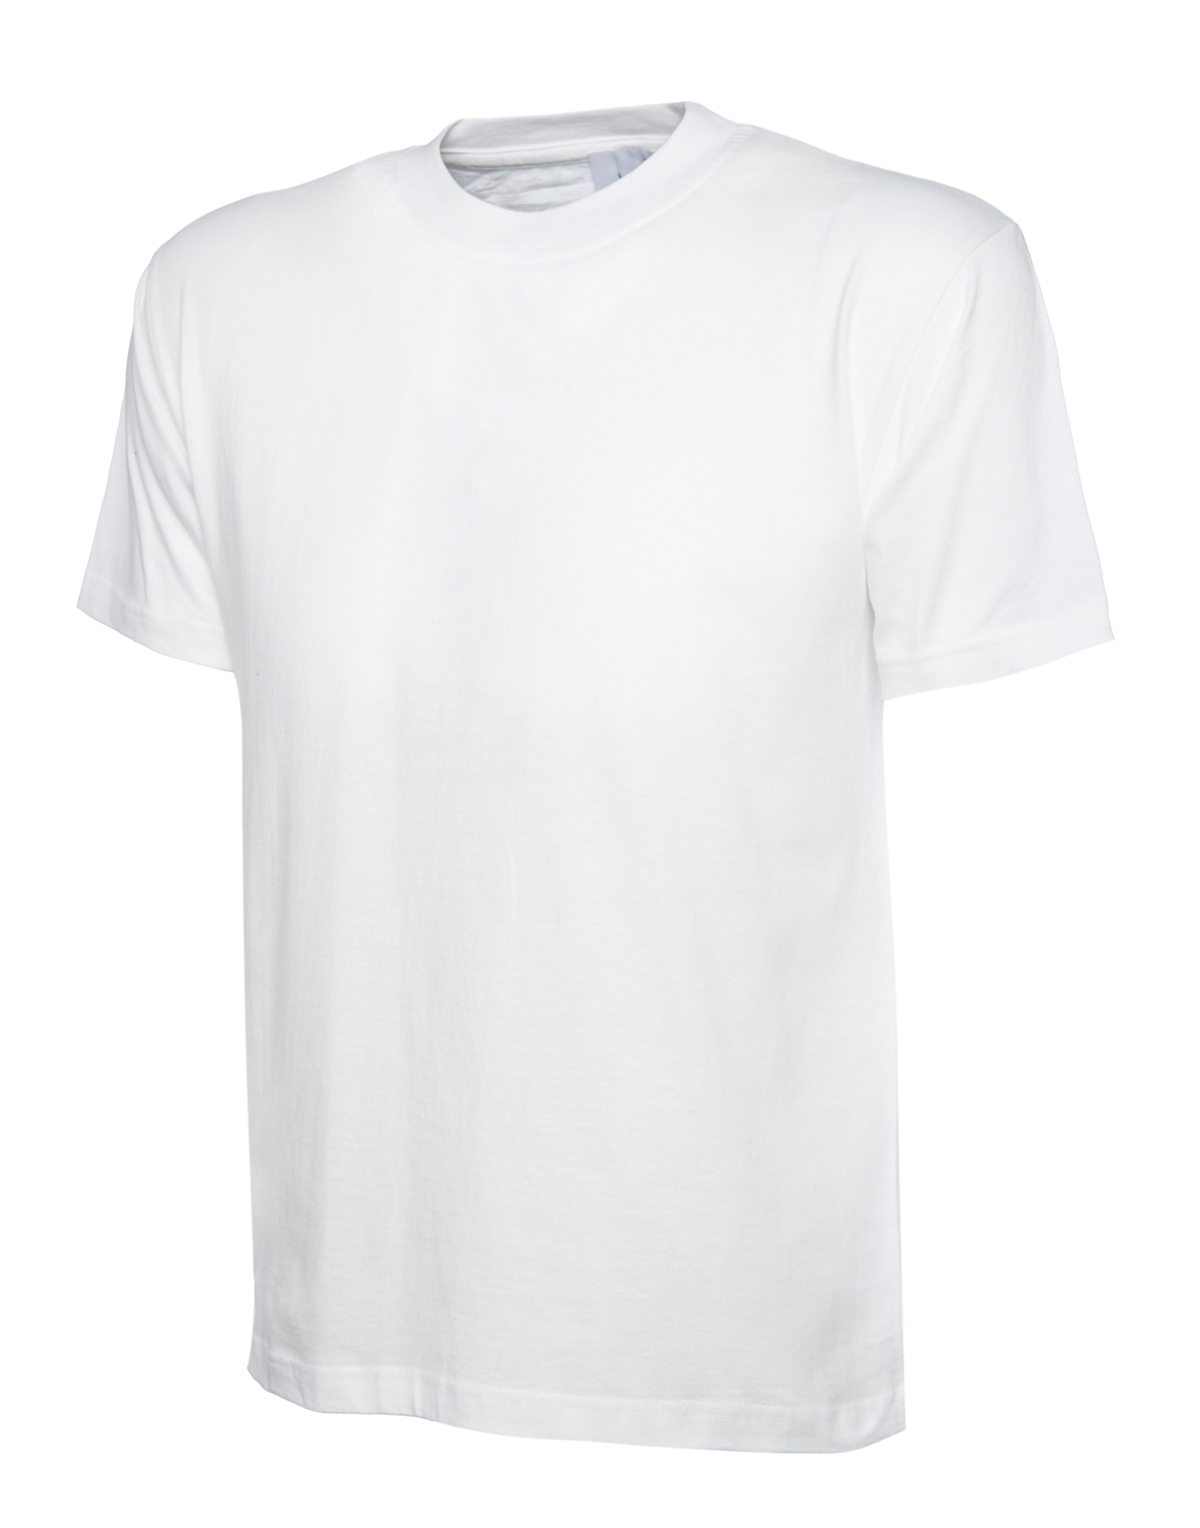 Uneek Herren T-Shirt Premium weiß